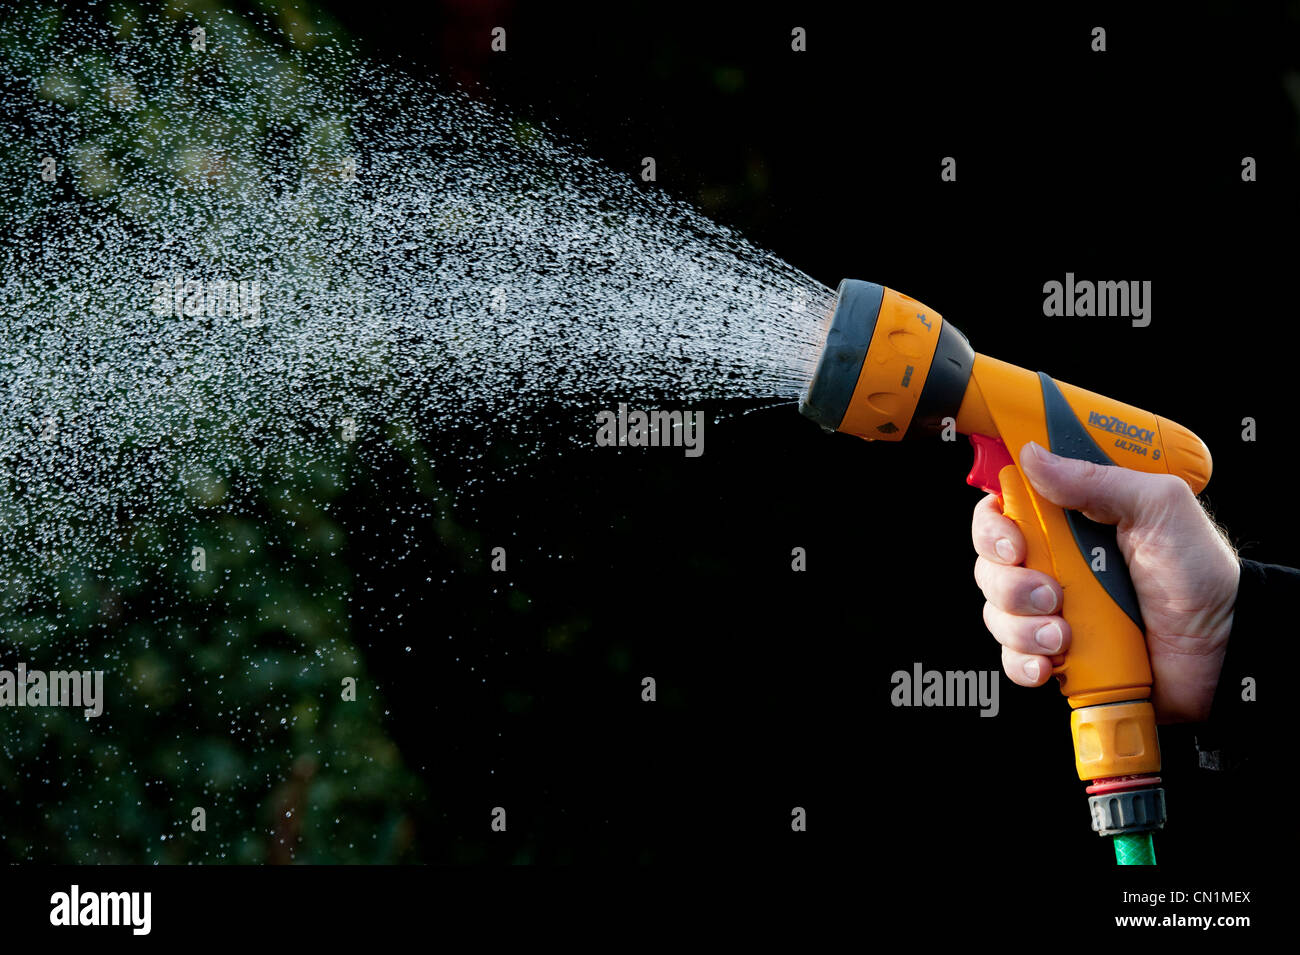 Gärtner Hand sprühen Wasser mit Gartenschlauch gegen einen dunklen Hintergrund. Großbritannien Stockfoto